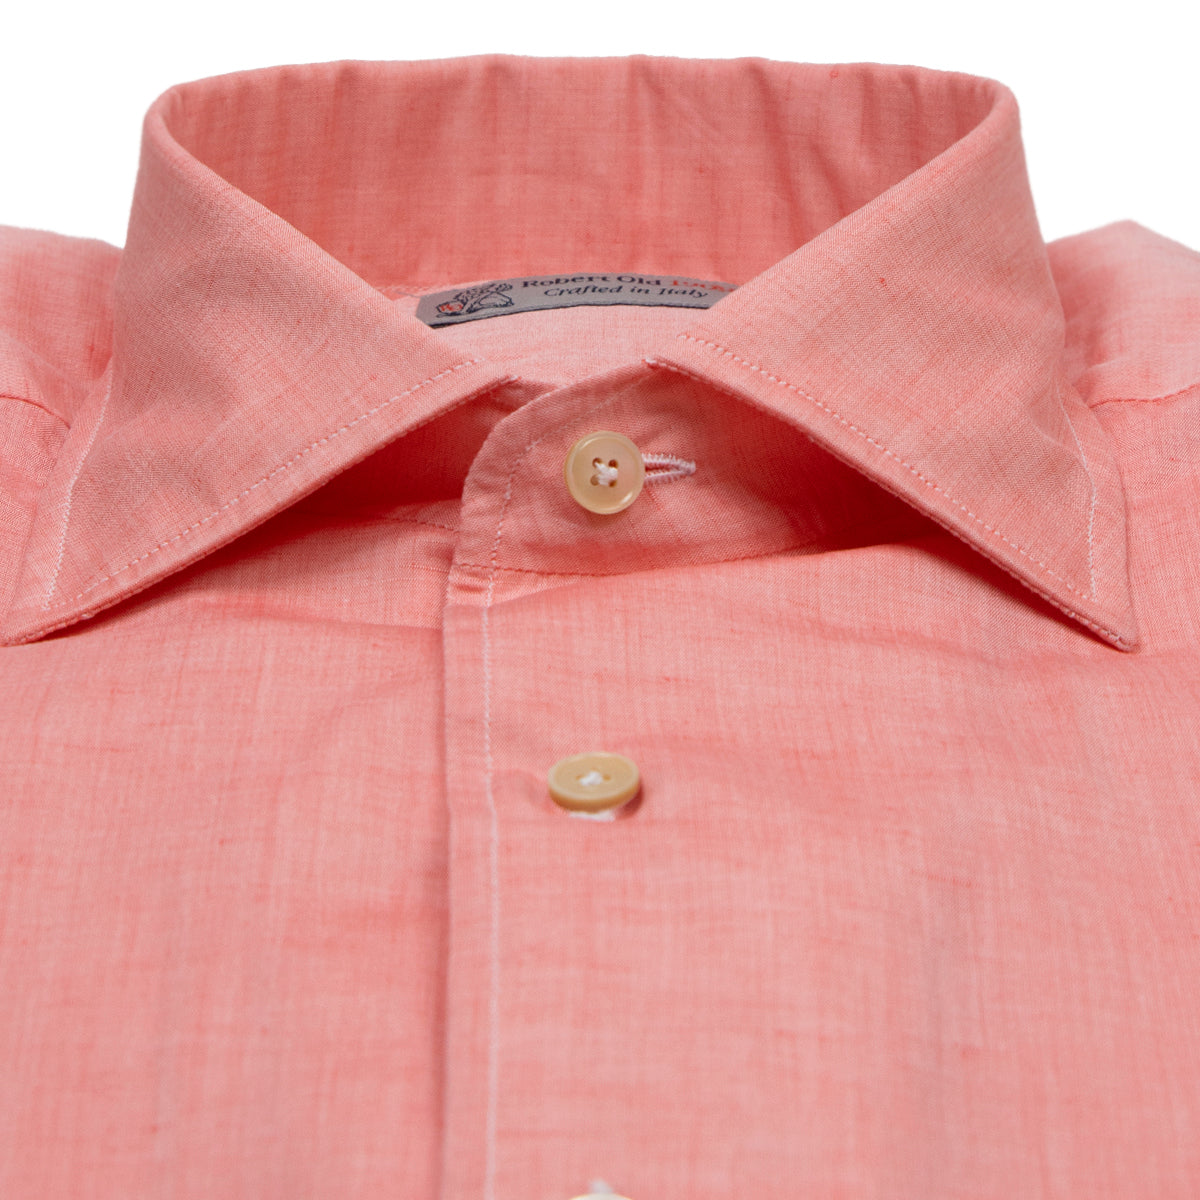 Pink Cotton & Linen Long Sleeve Shirt  Robert Old   